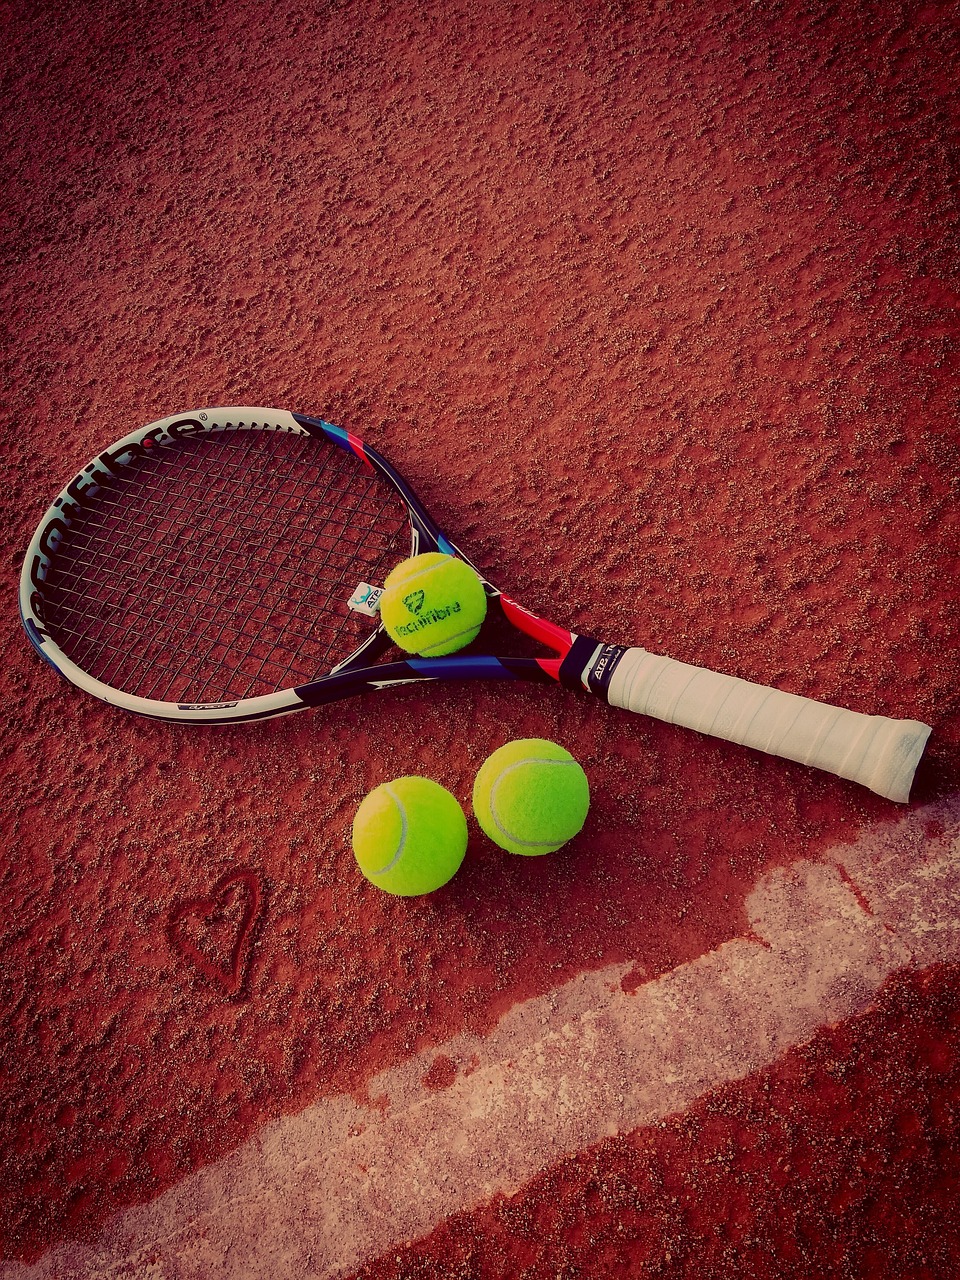 tennis, racket, balls-5621605.jpg